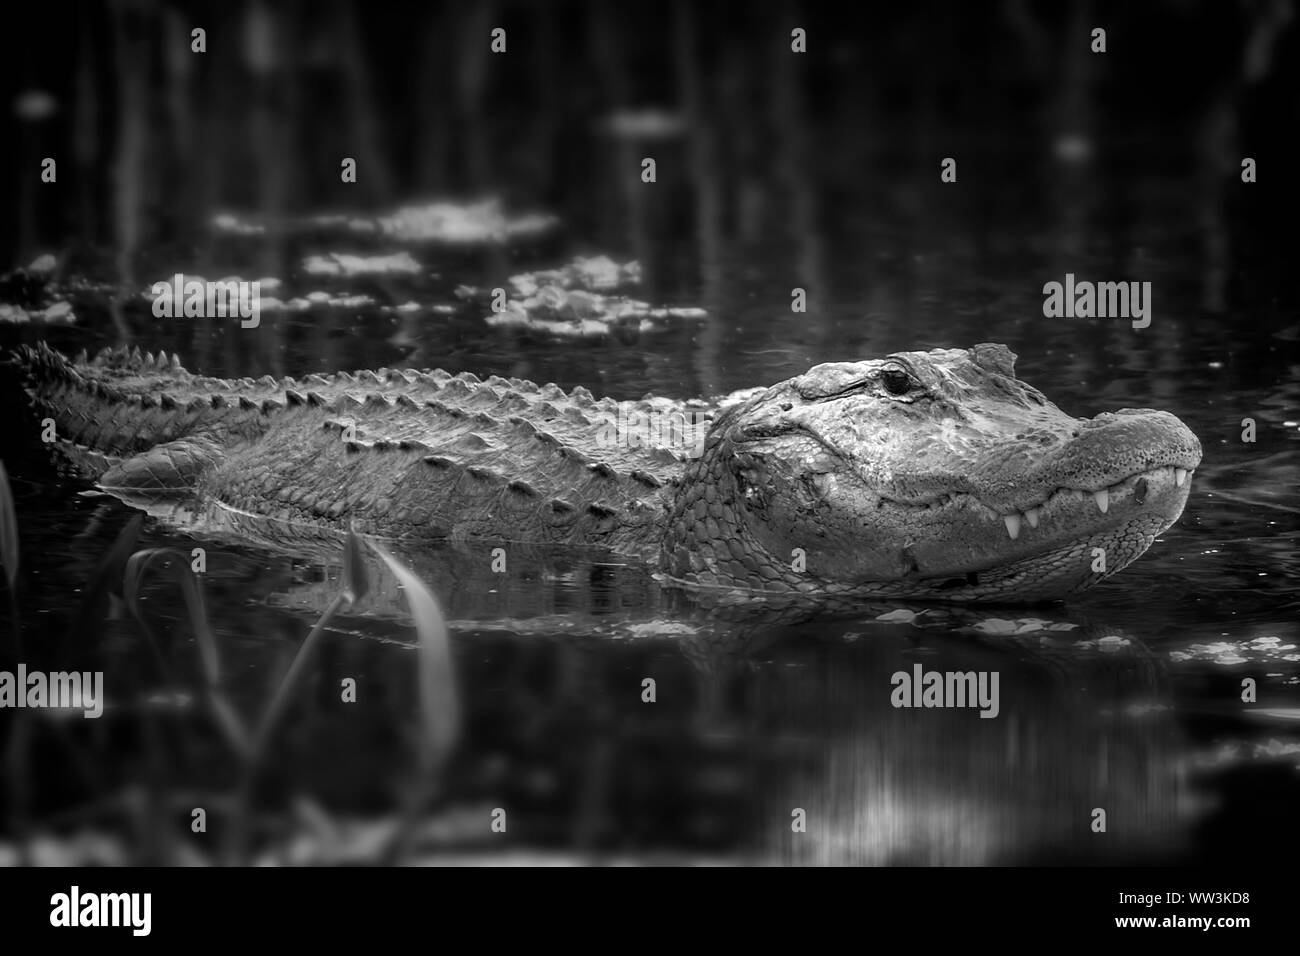 Un Alligator soulève sa tête hors de l'eau dans les Everglades de Floride. Banque D'Images